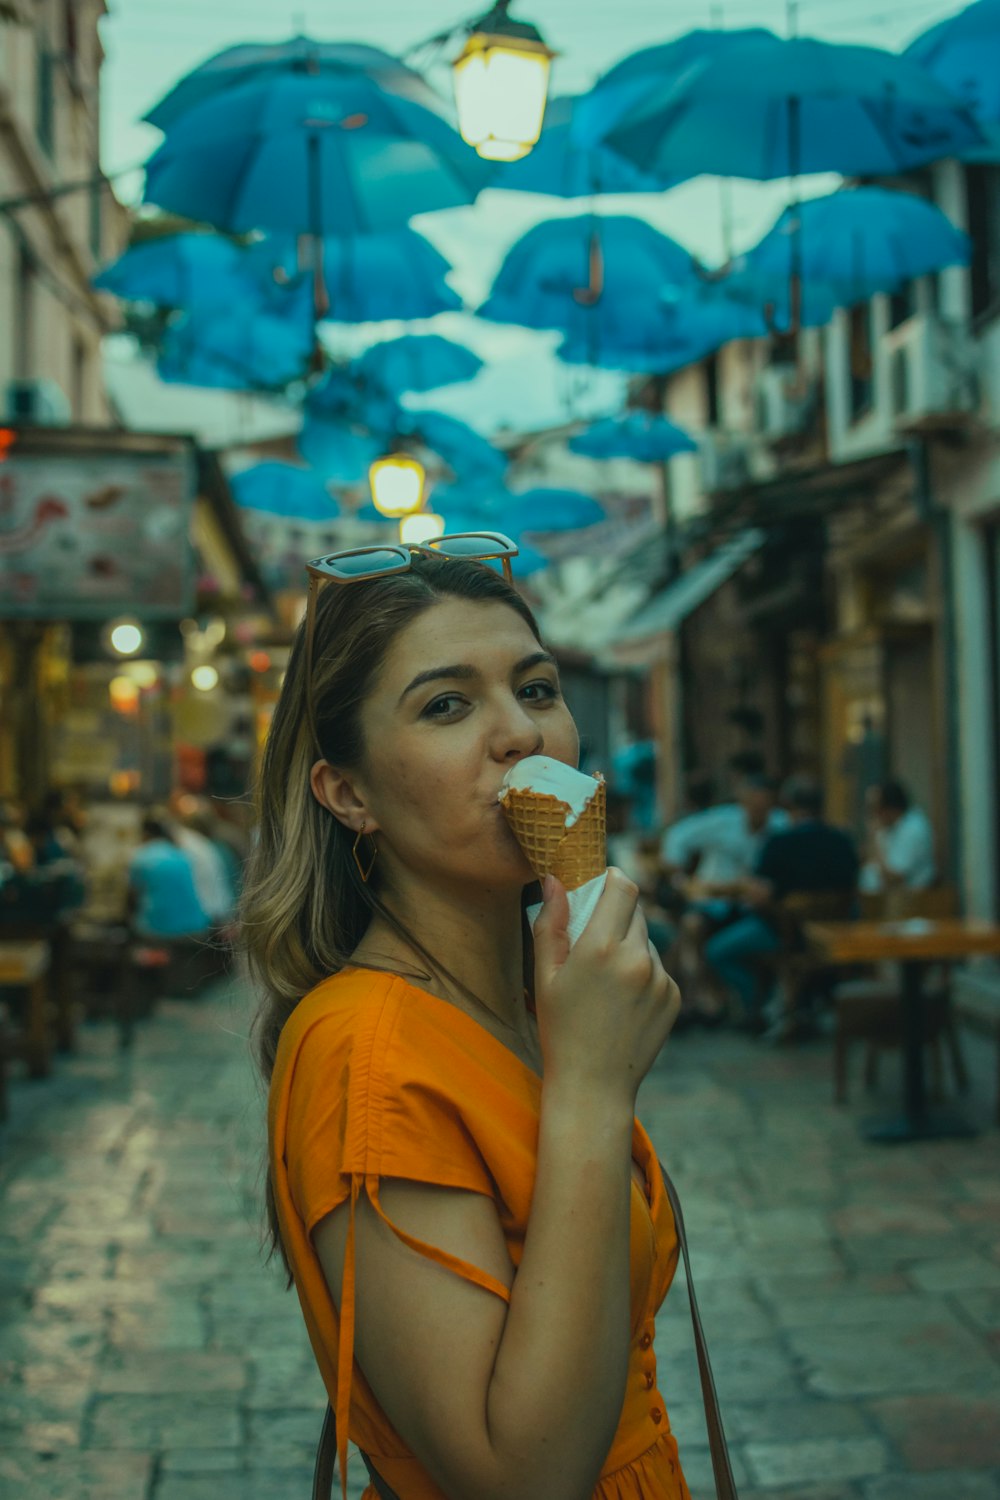 アイスクリームを食べる女性